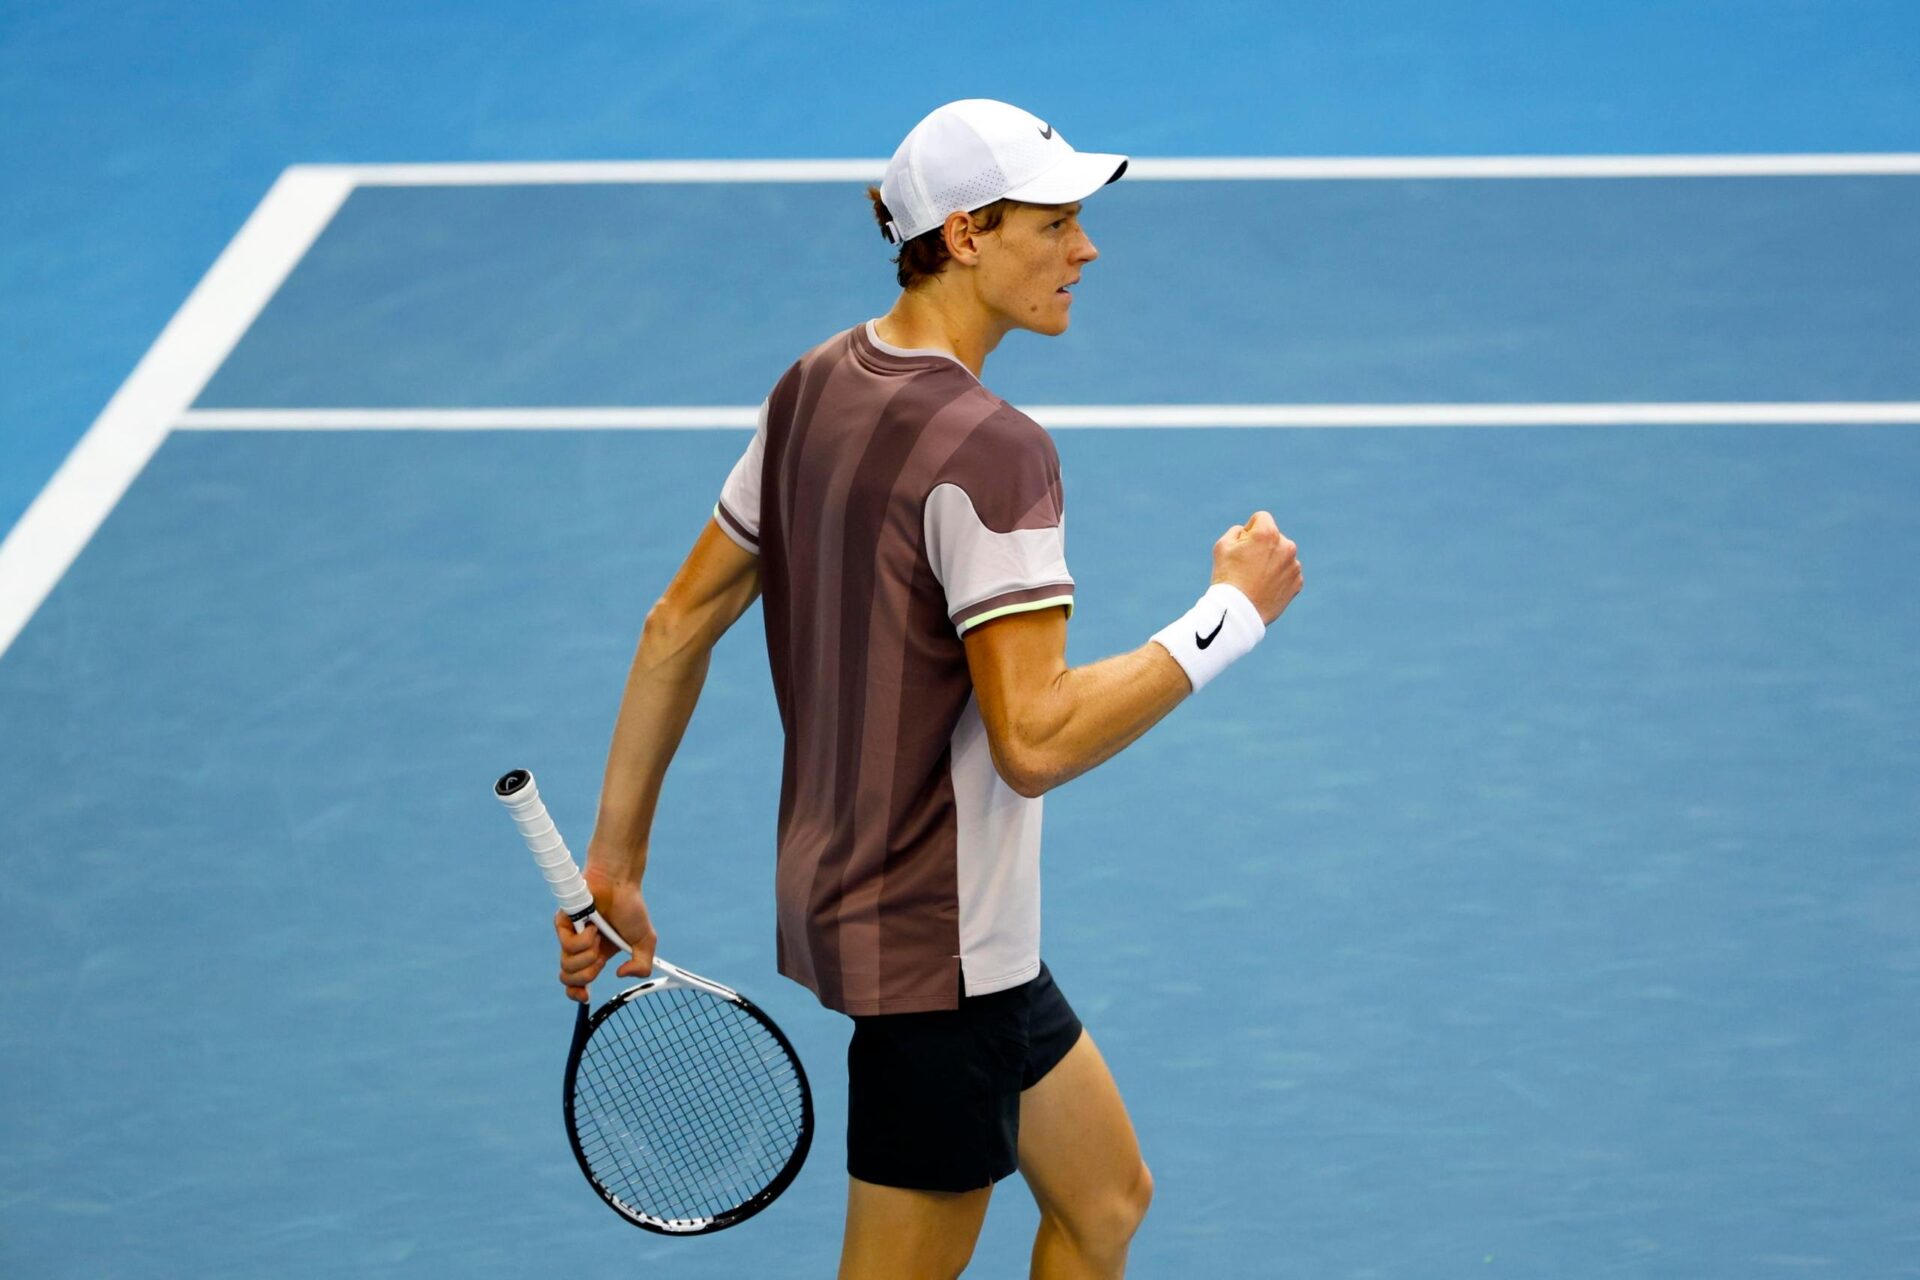 Tennis, Sinner batte Djokovic e vola in finale agli Australian Open